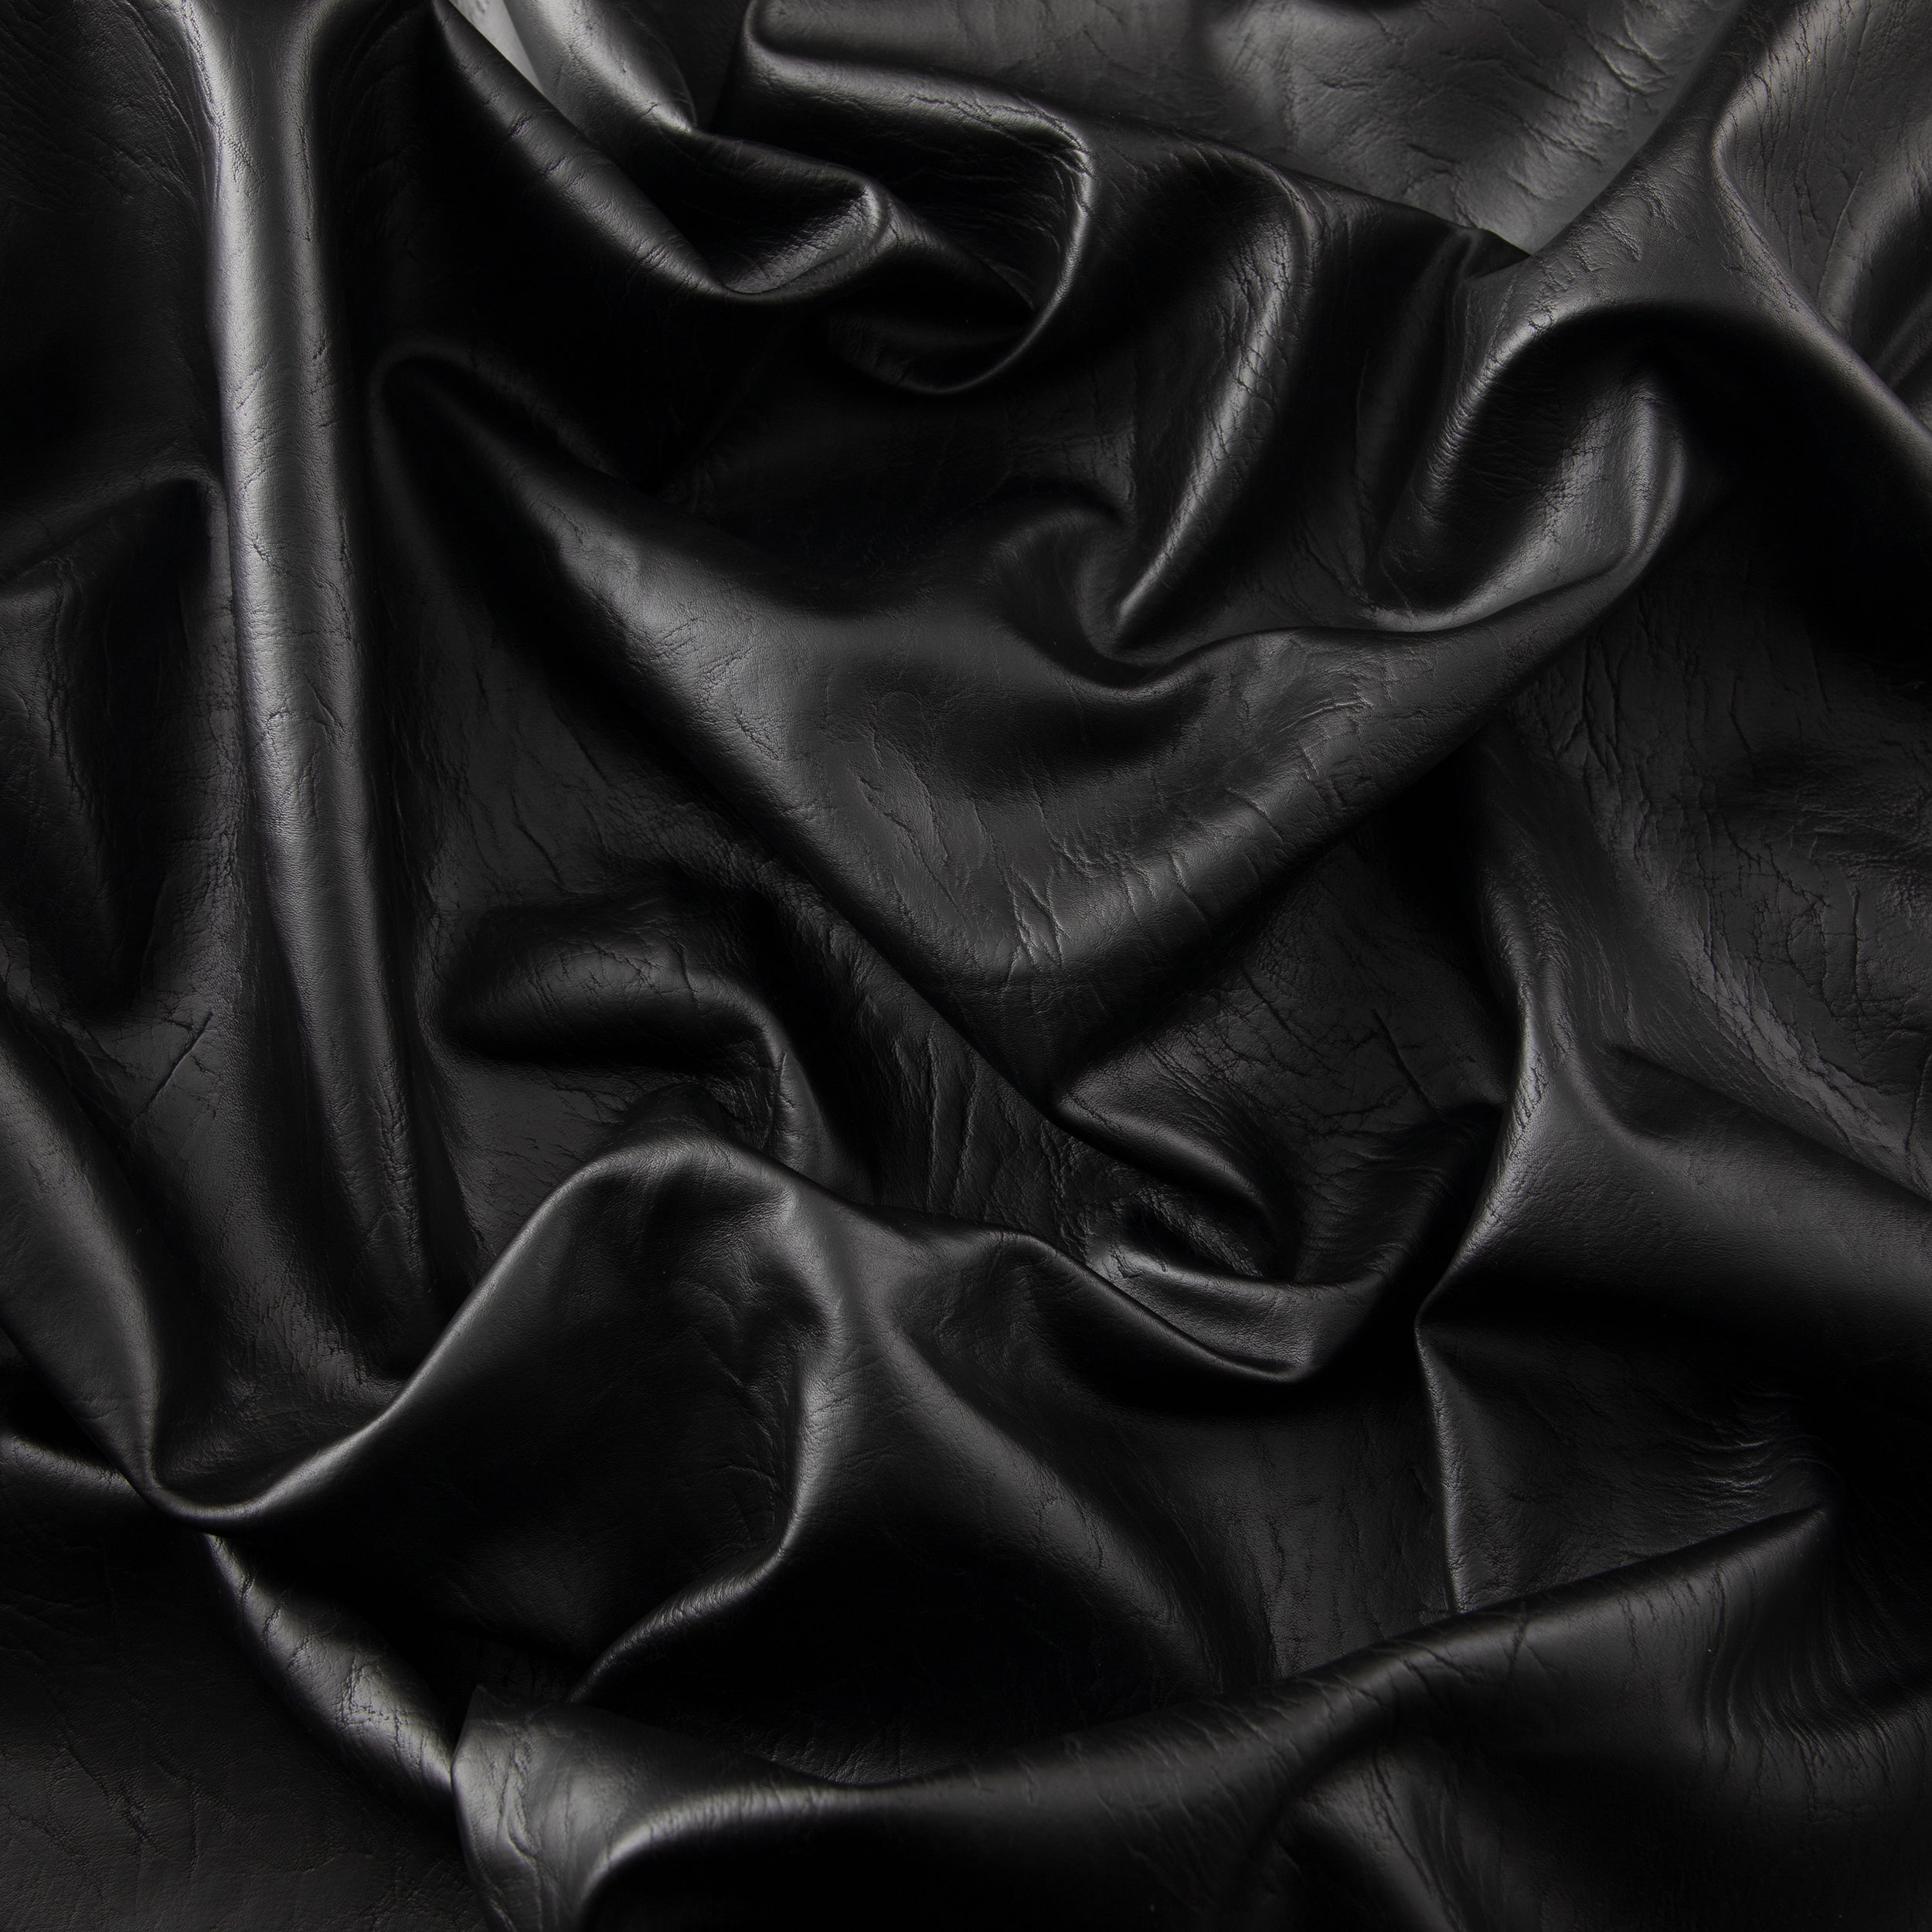 Yaya Han Cosplay Black Low Stretch Faux Leather Fabric - Faux Leather & Suede Fabric - Fabric